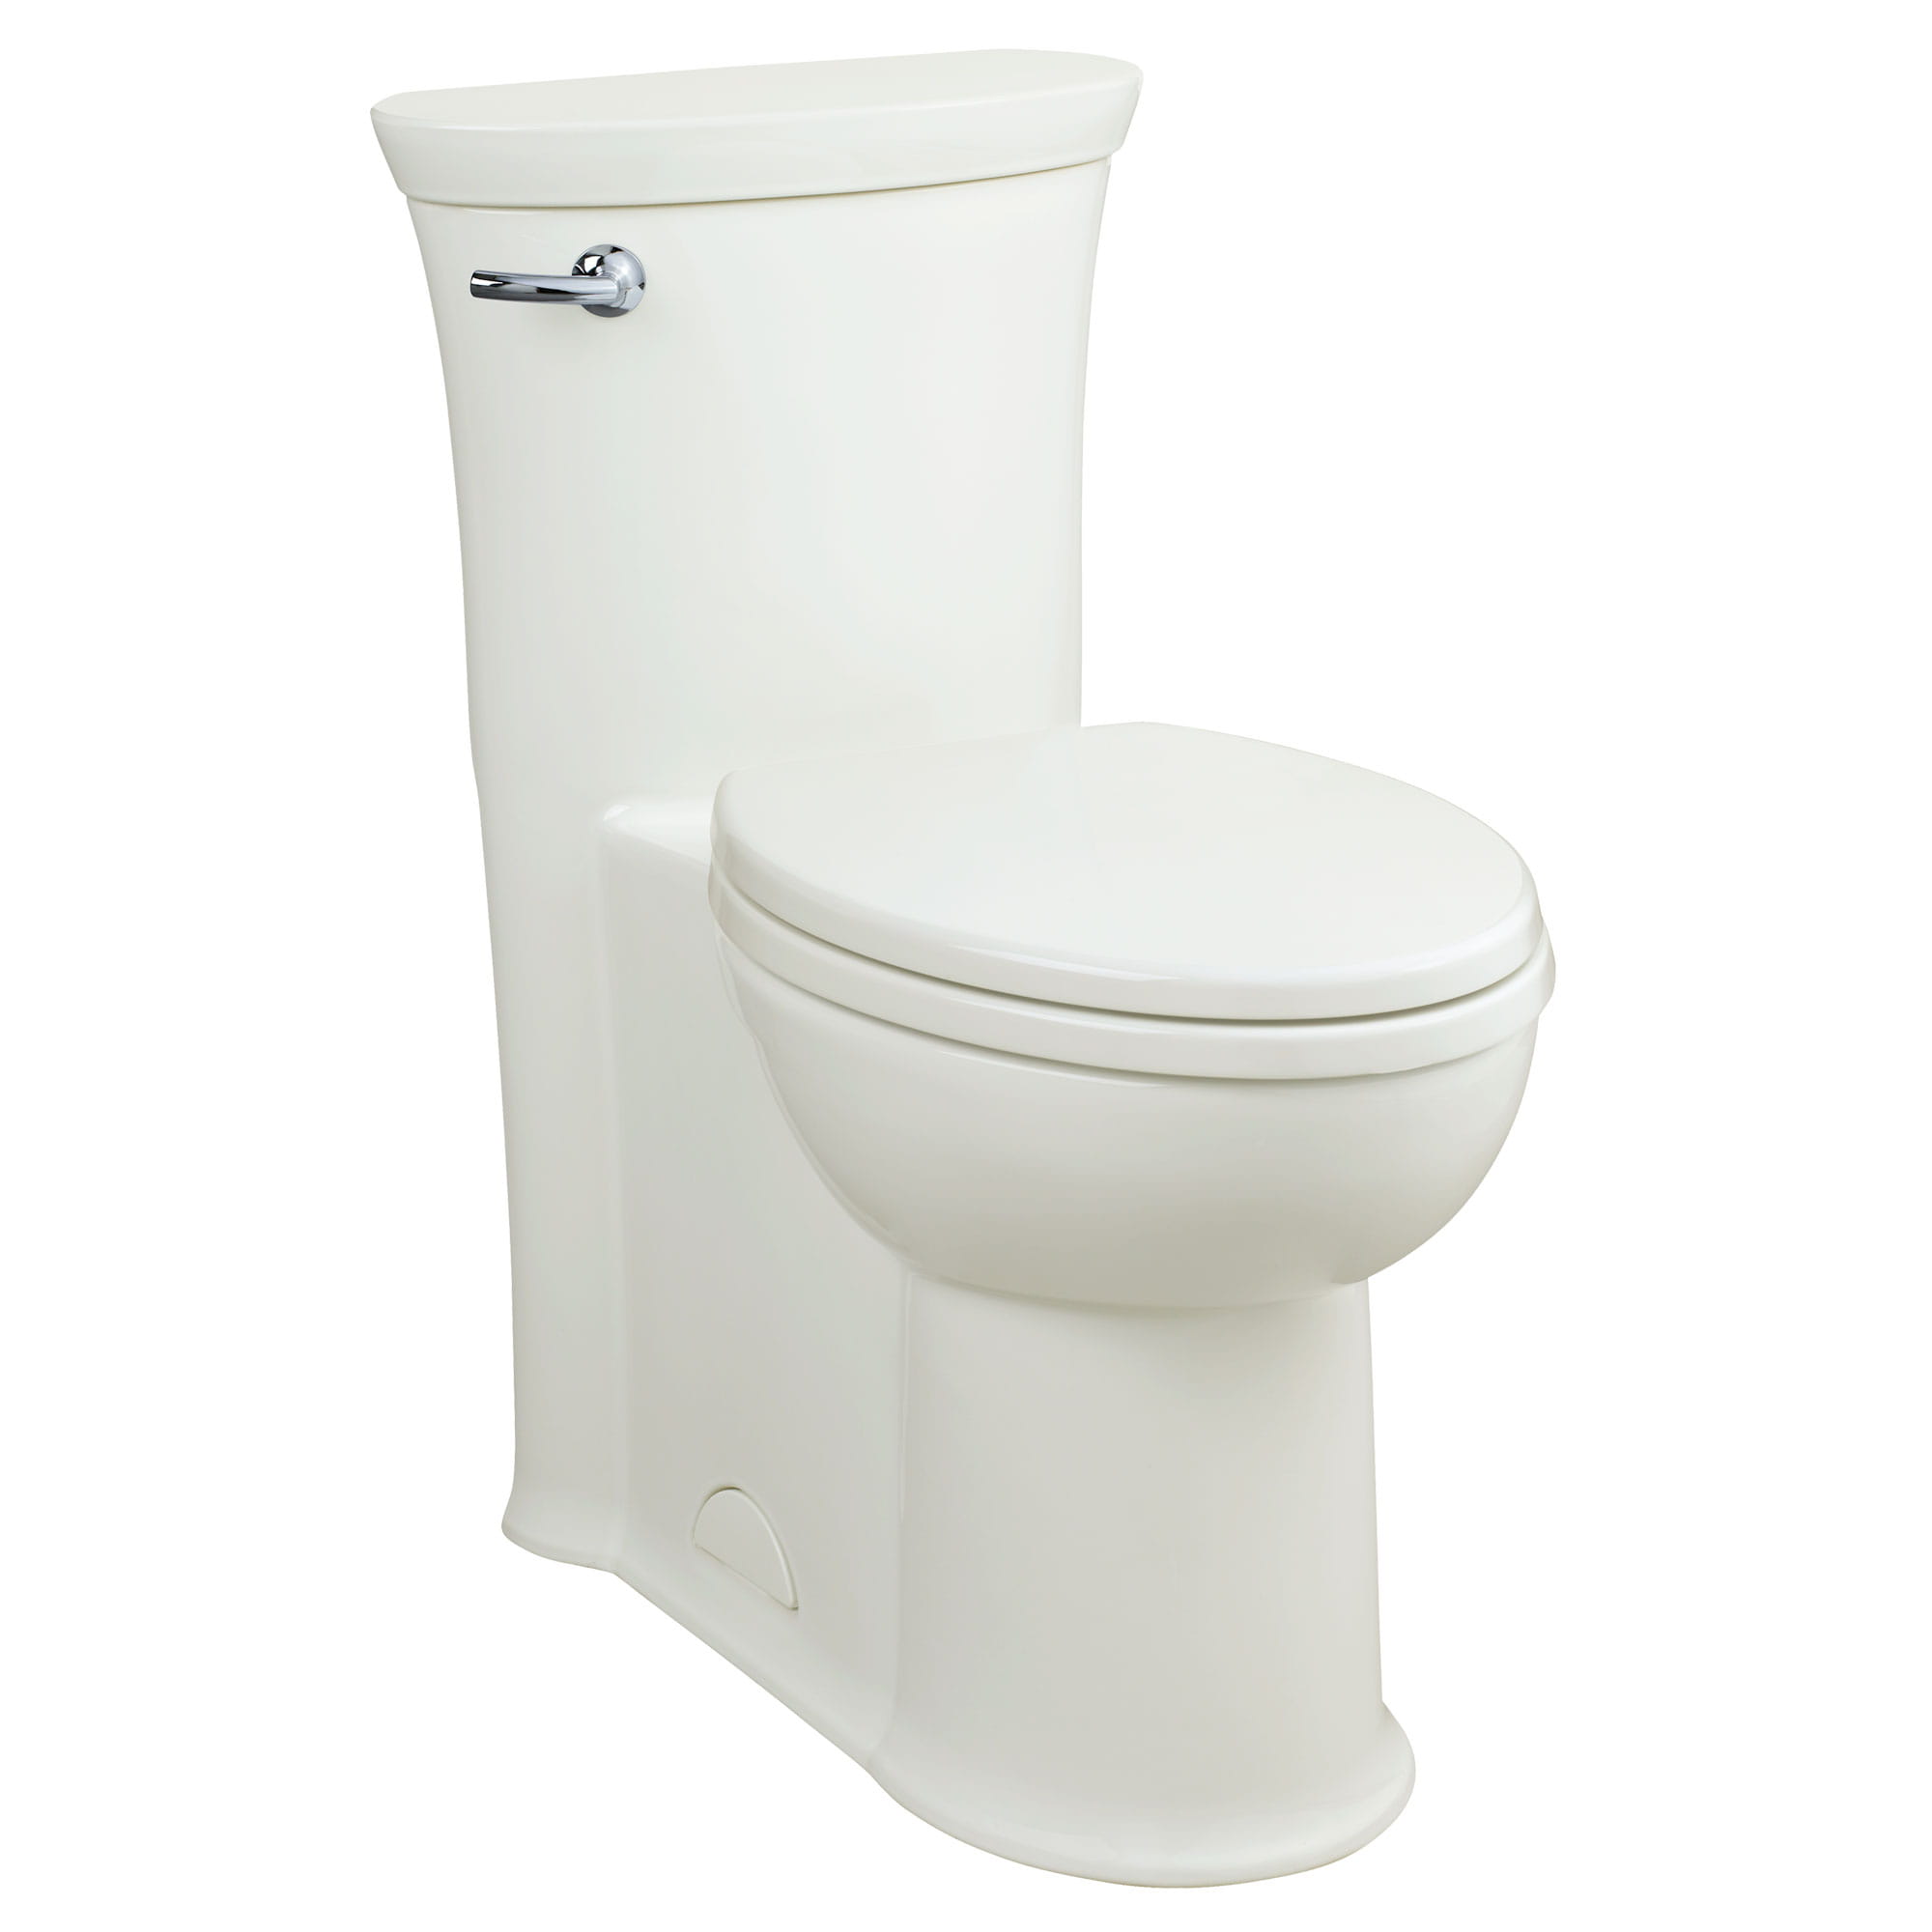 Toilette monopièce Tropic, 1,28 gpc/4,8 lpc, à cuvette allongée à hauteur de chaise avec siège